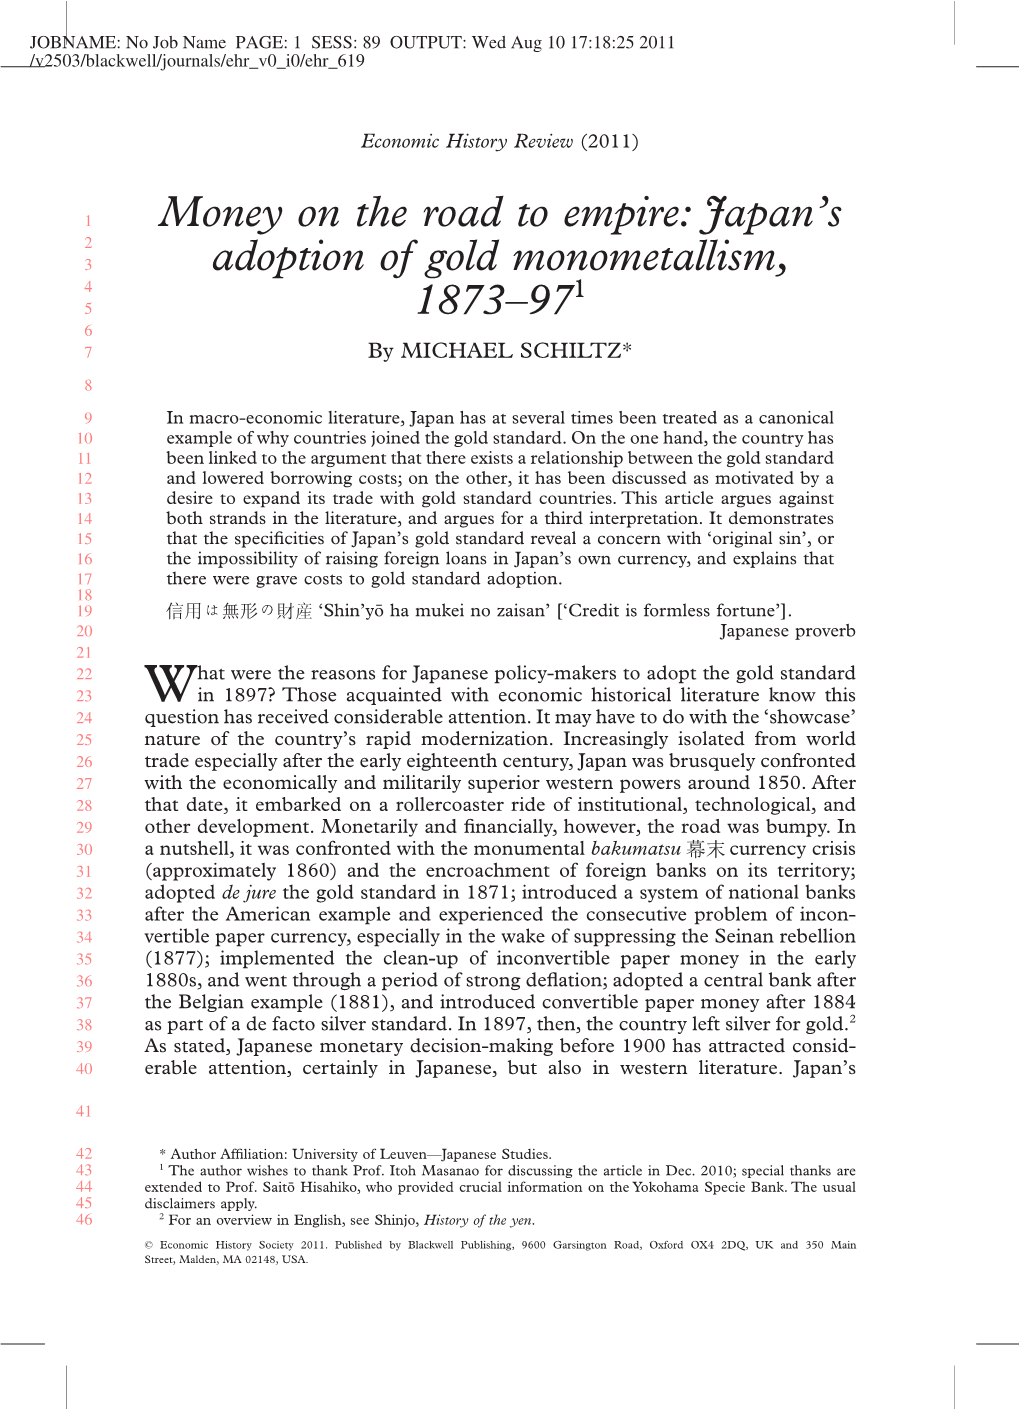 Japan's Adoption of Gold Monometallism, 1873–971